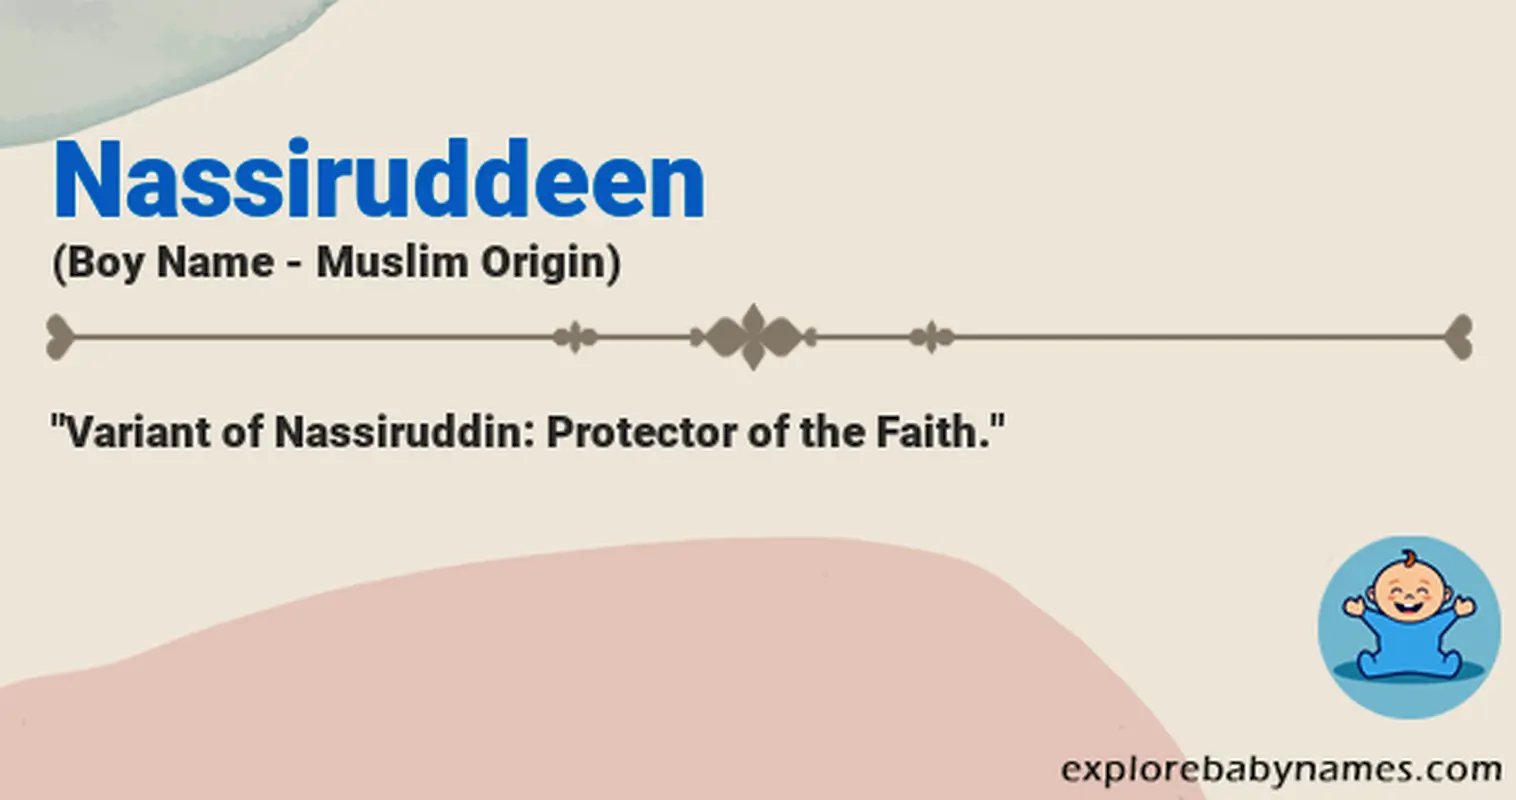 Meaning of Nassiruddeen